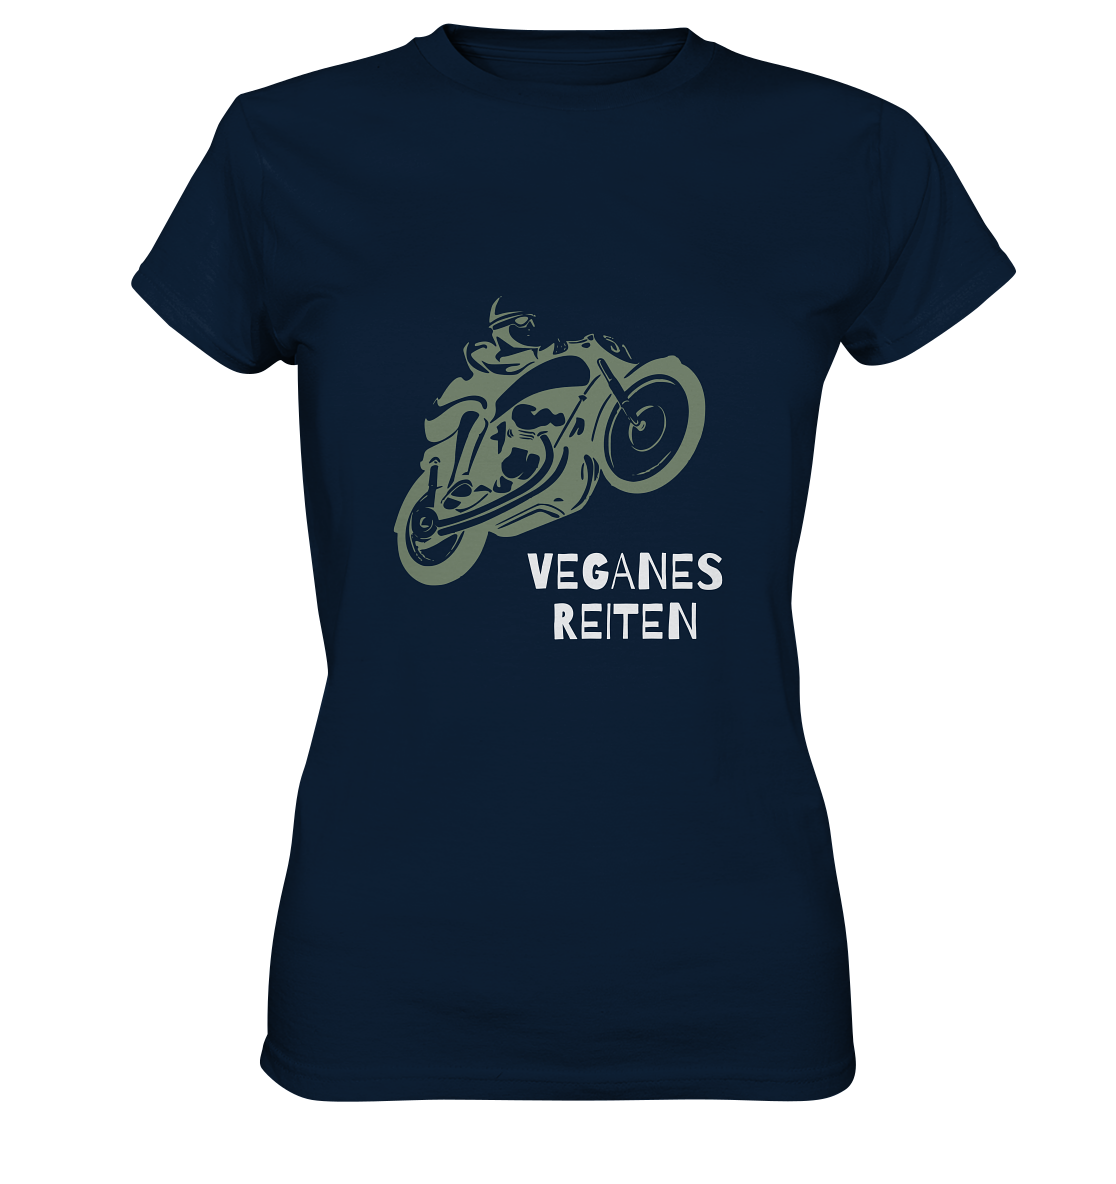 Damen T-Shirt, Rundhals, mit Motorrad-Aufdruck und Spruch "Veganes Reiten", dunkel blau